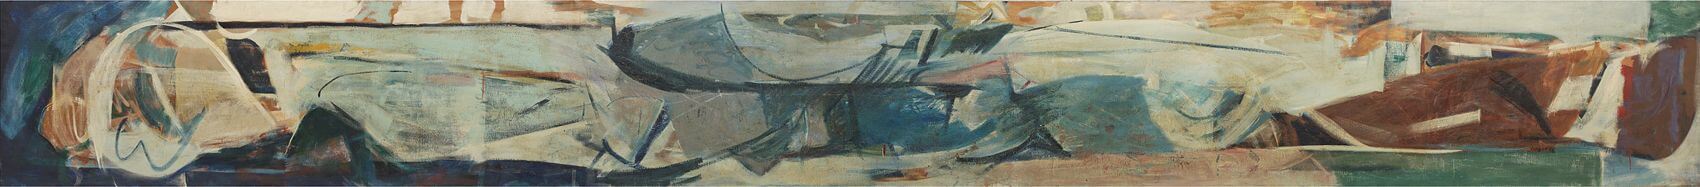 Peter Lanyon - Porthmeor Mural